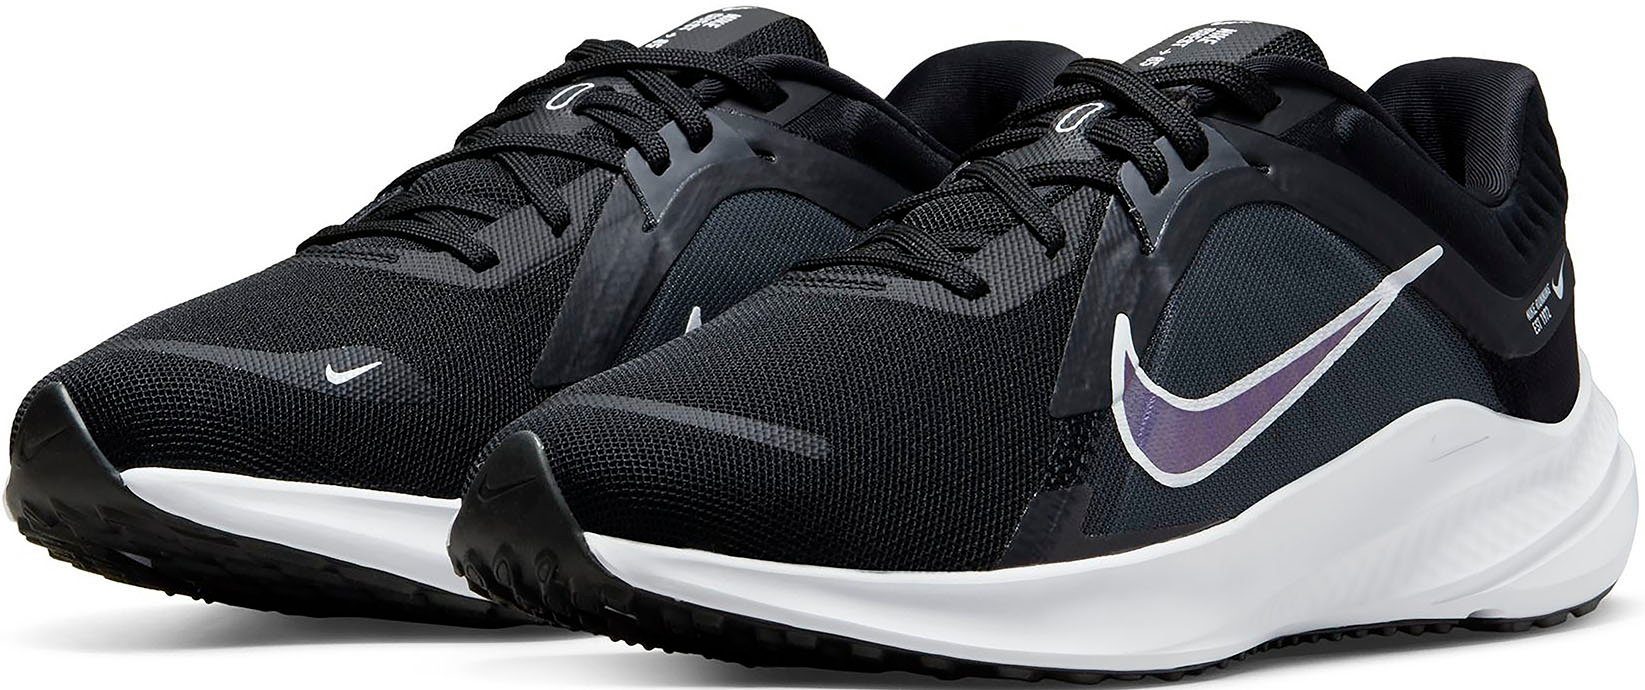 Laufschuh, Nike QUEST Traktion Die auf Gummi-Außensohle sorgt 5 für dem